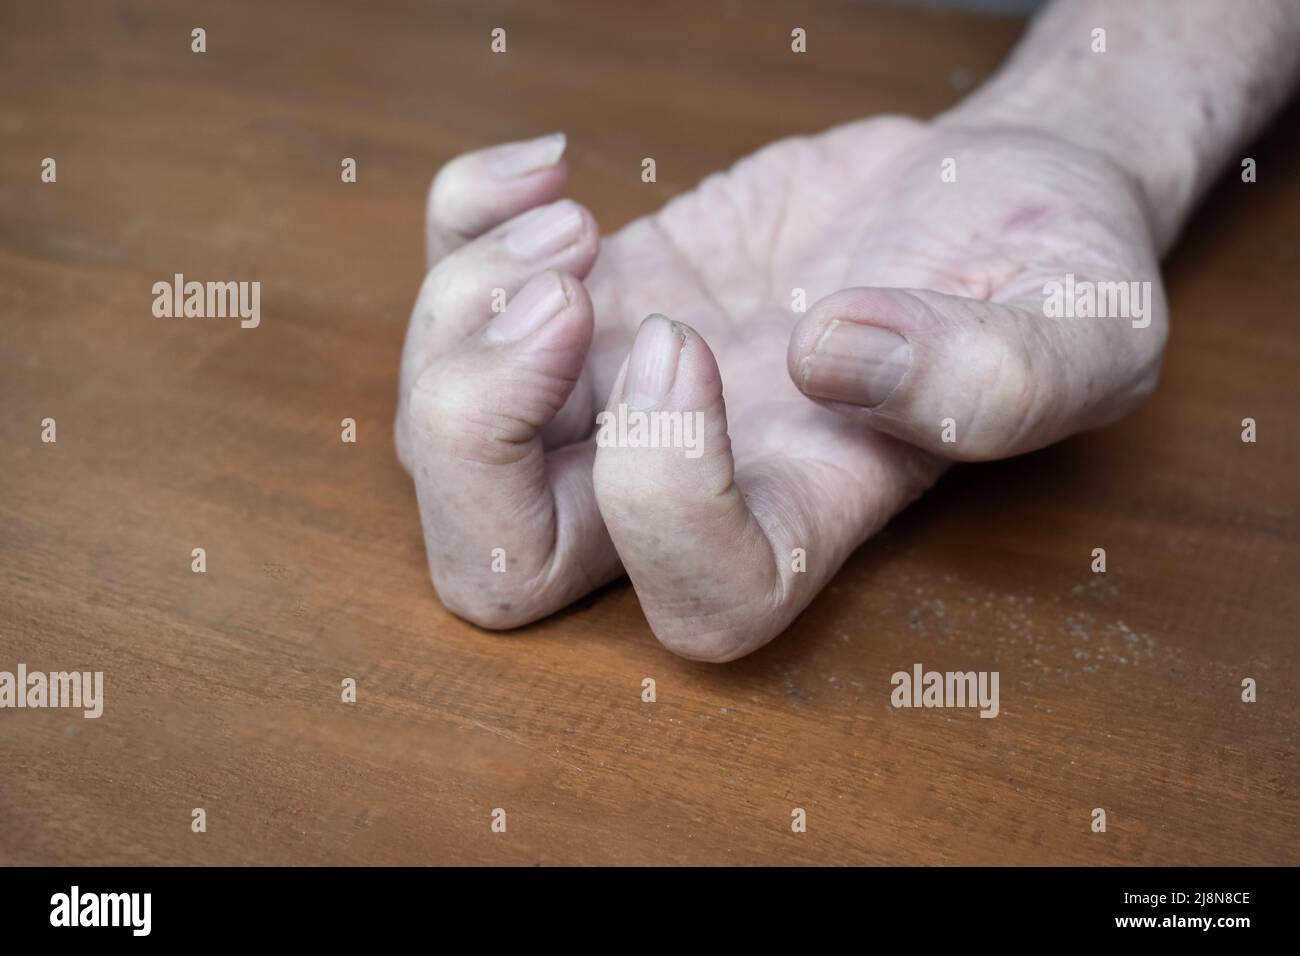 Volkmann Kontraktur im linken oberen Teil des älteren Mannes aus Südostasien. Es ist eine dauerhafte Verkürzung der Unterarmmuskulatur, die zu einem klawähnlichen Po führt Stockfoto